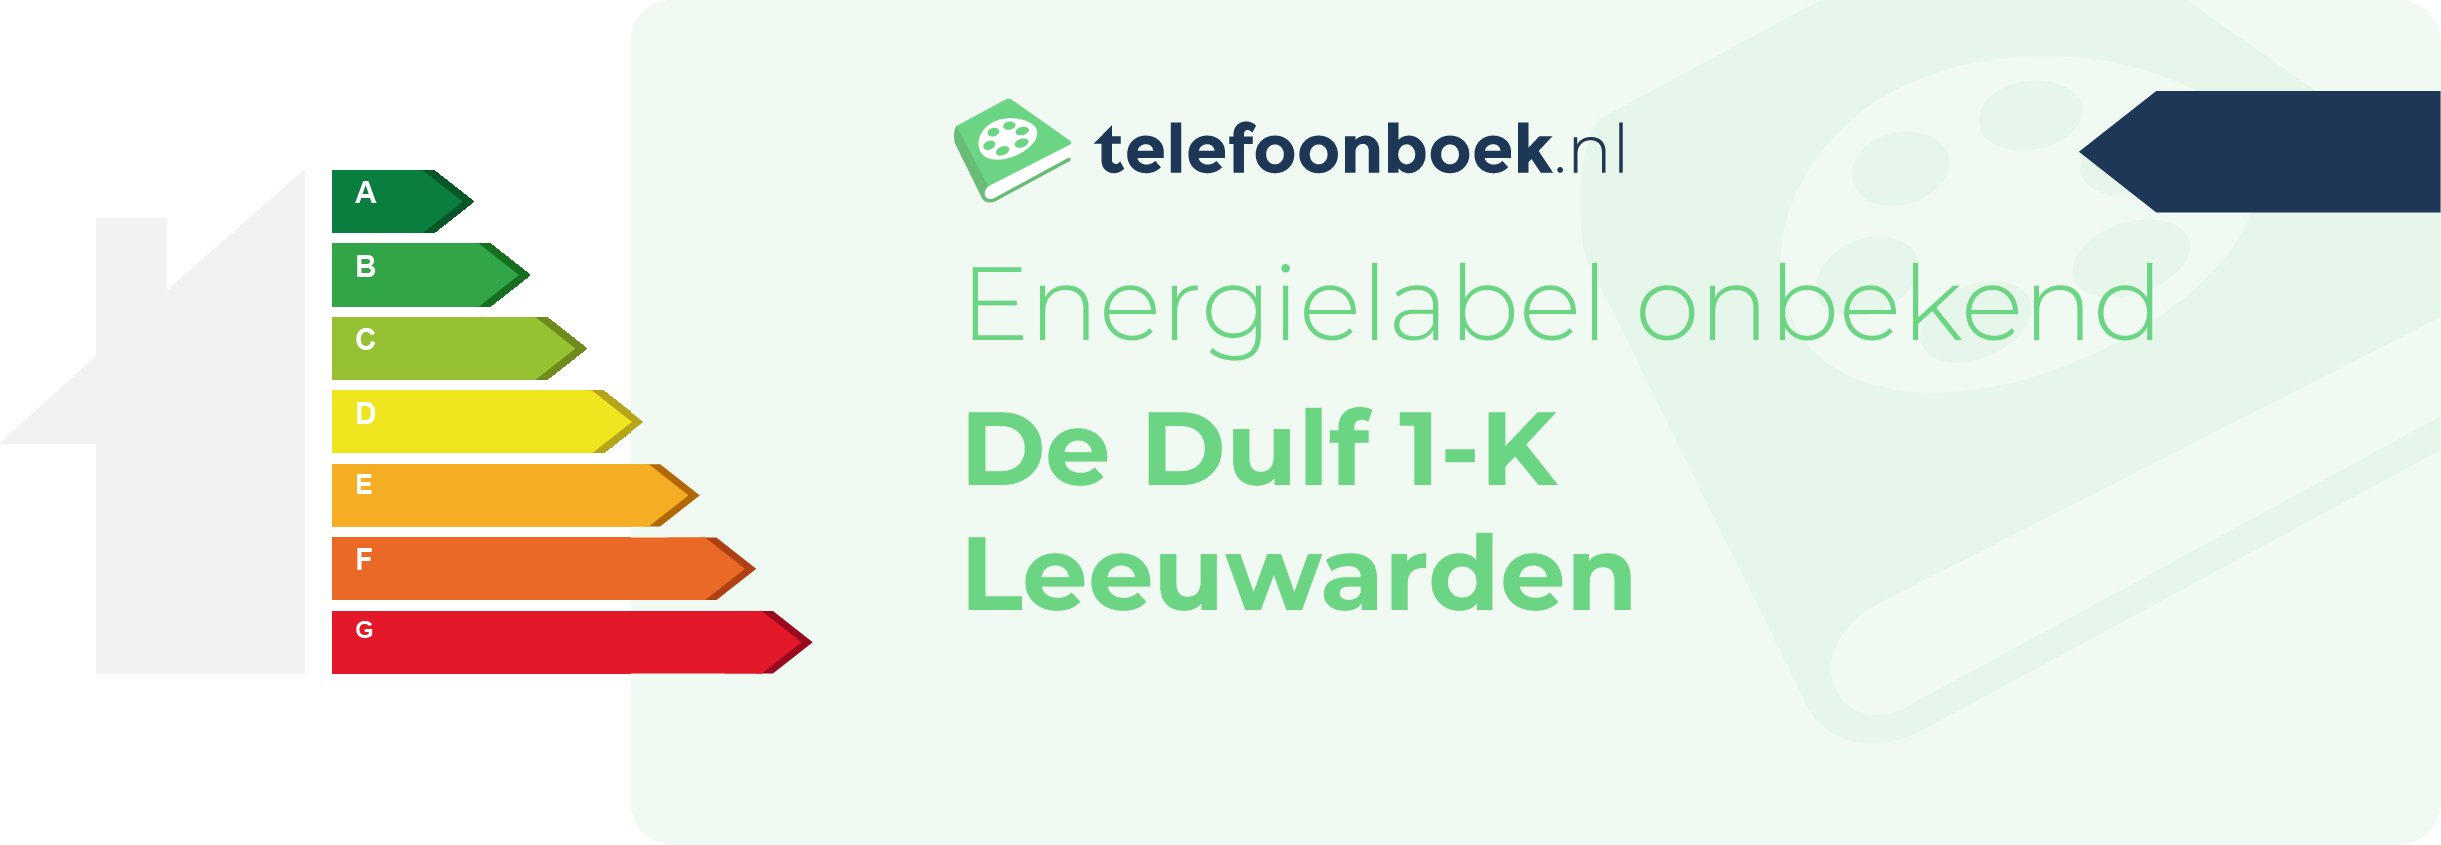 Energielabel De Dulf 1-K Leeuwarden